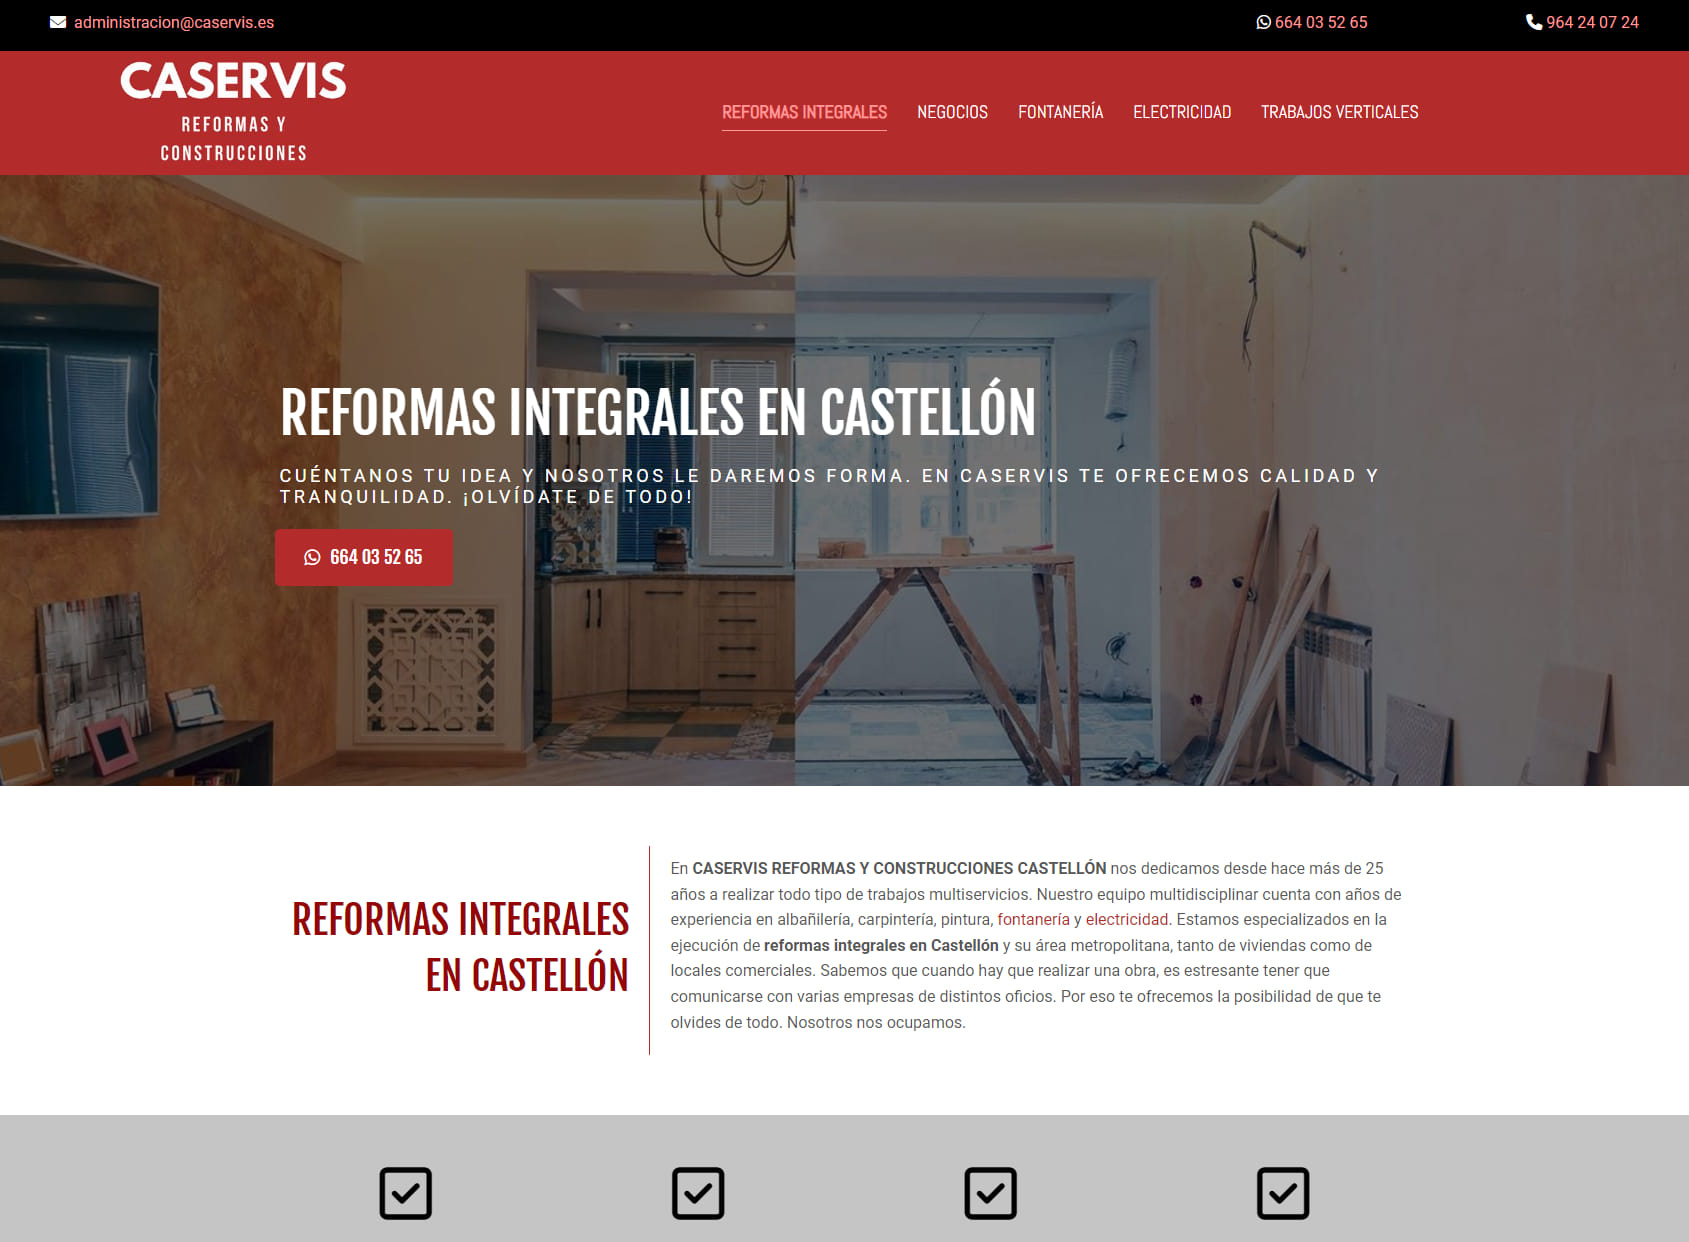 Caservis Reformas y Construcciones Castellón